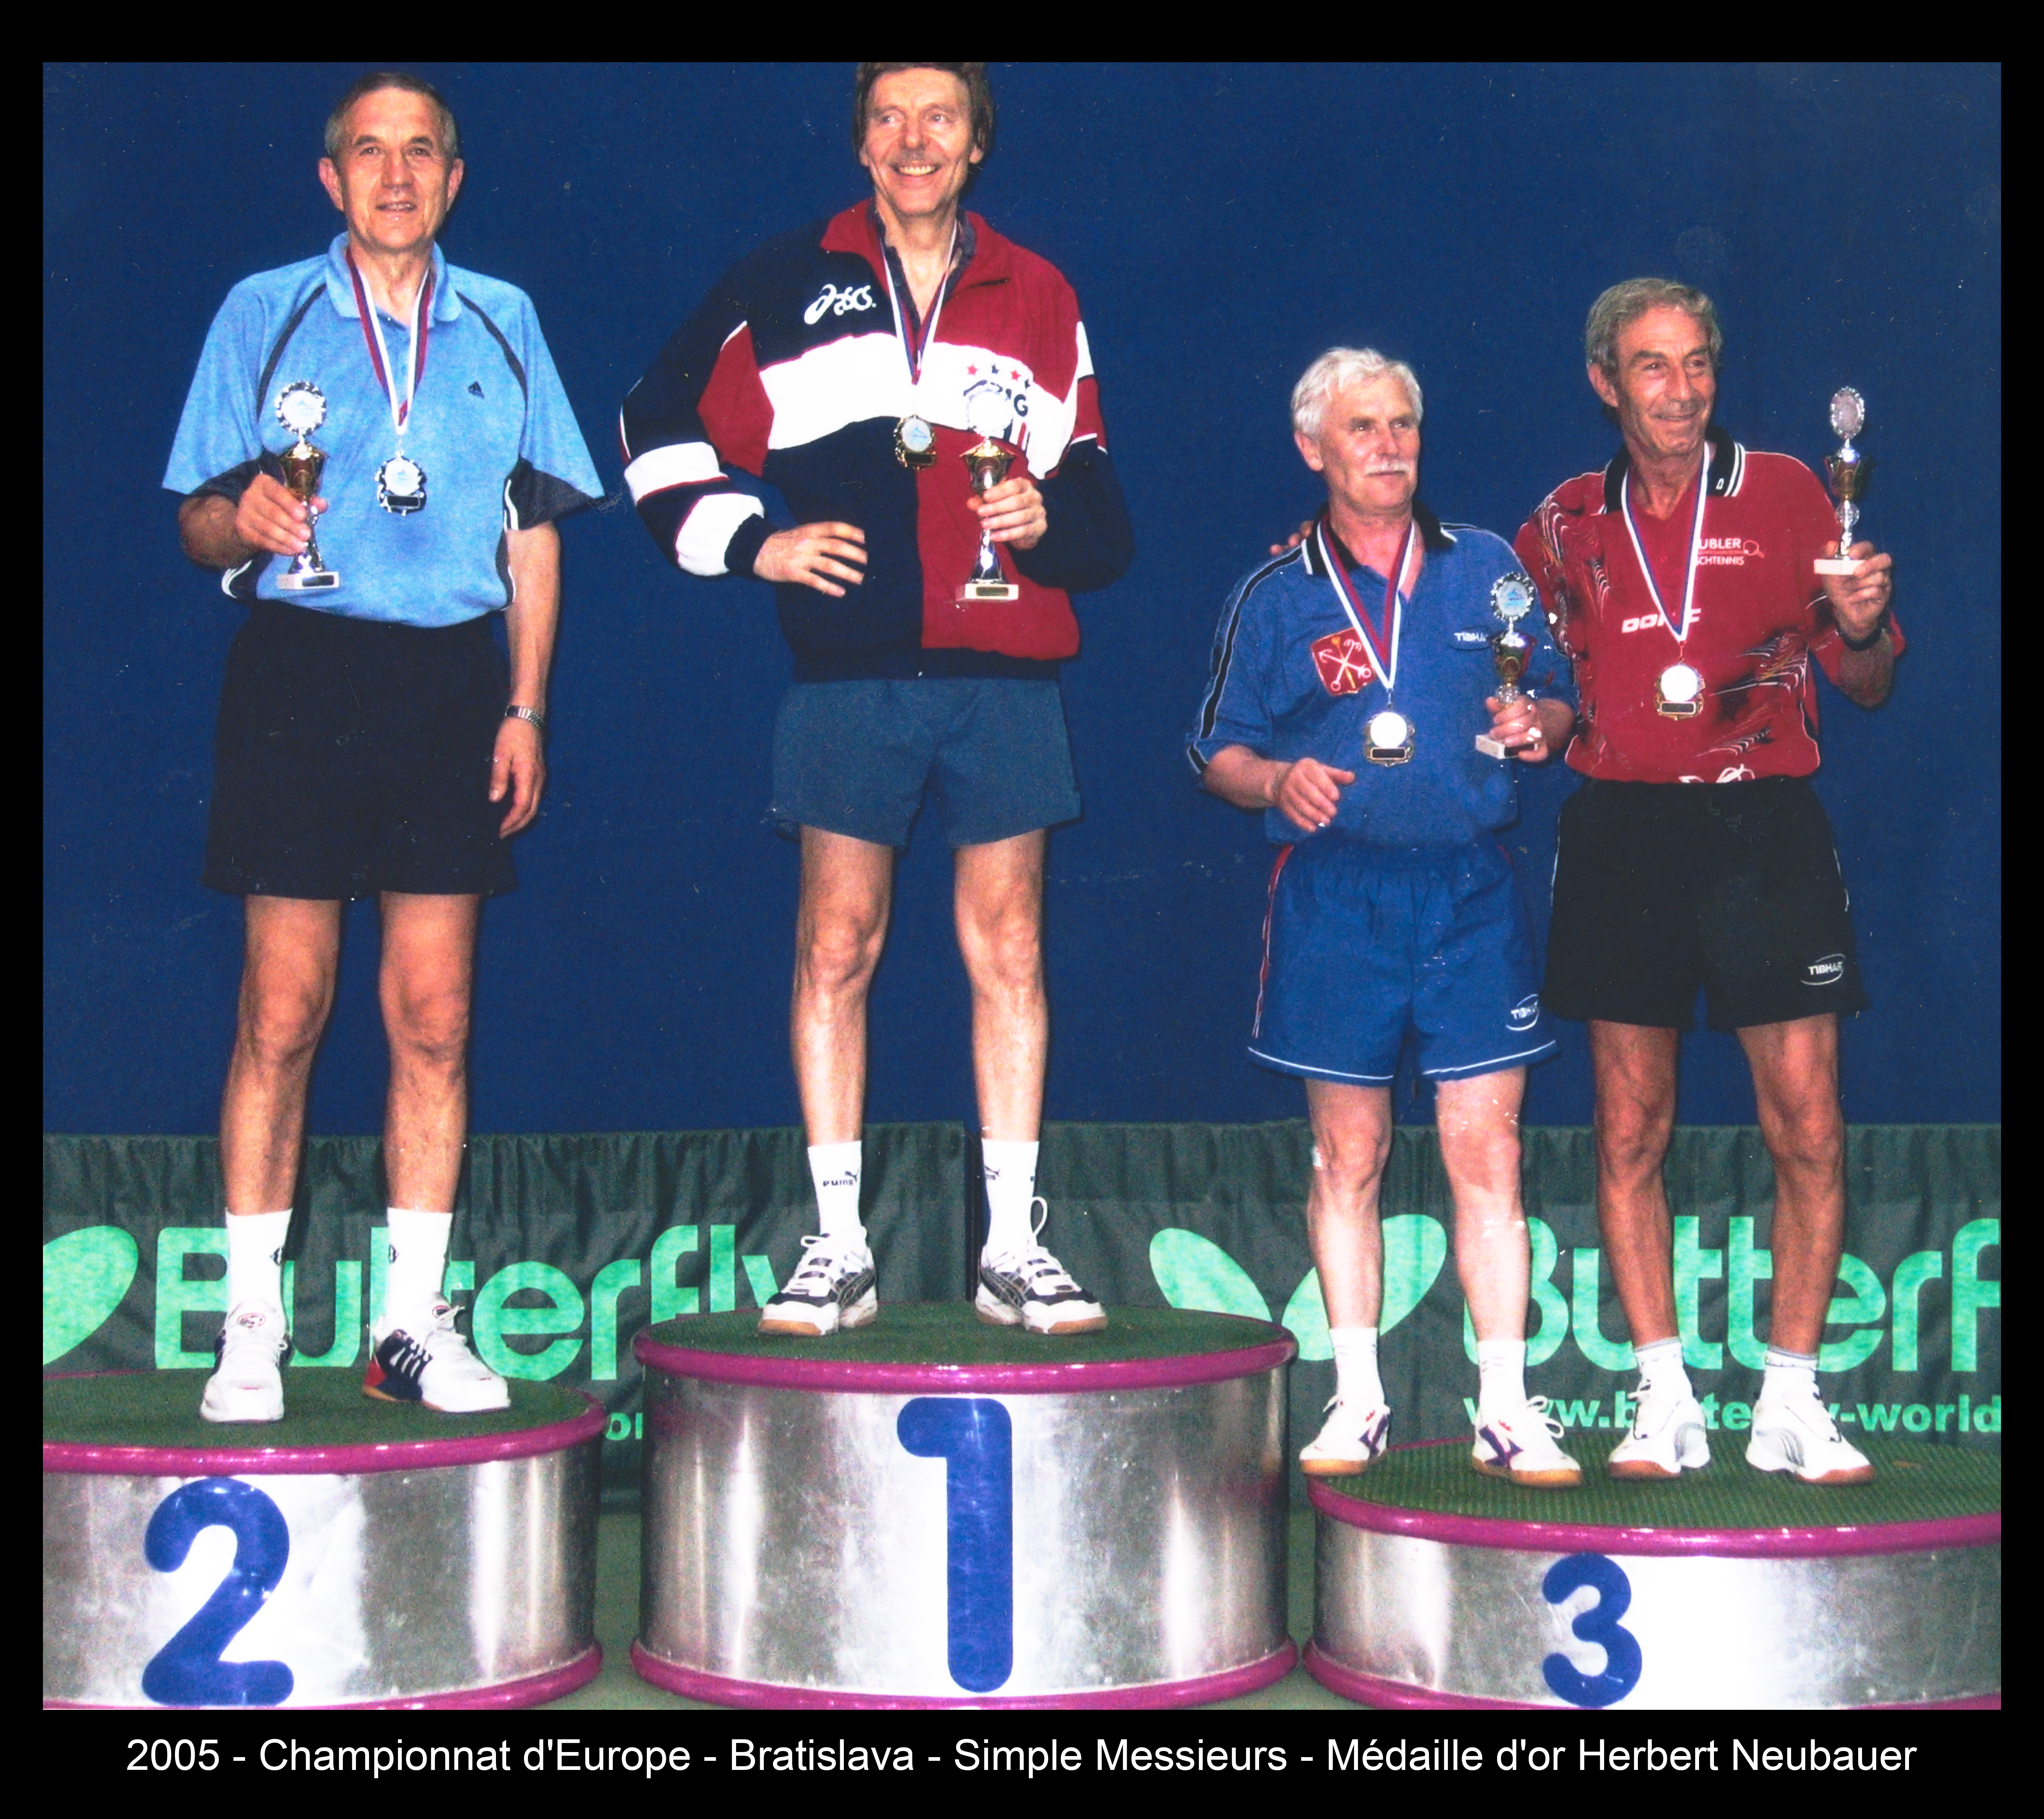 2005 - Championnat d'Europe - Bratislava - Simple Messieurs - Médaille d'or Herbert Neubauer